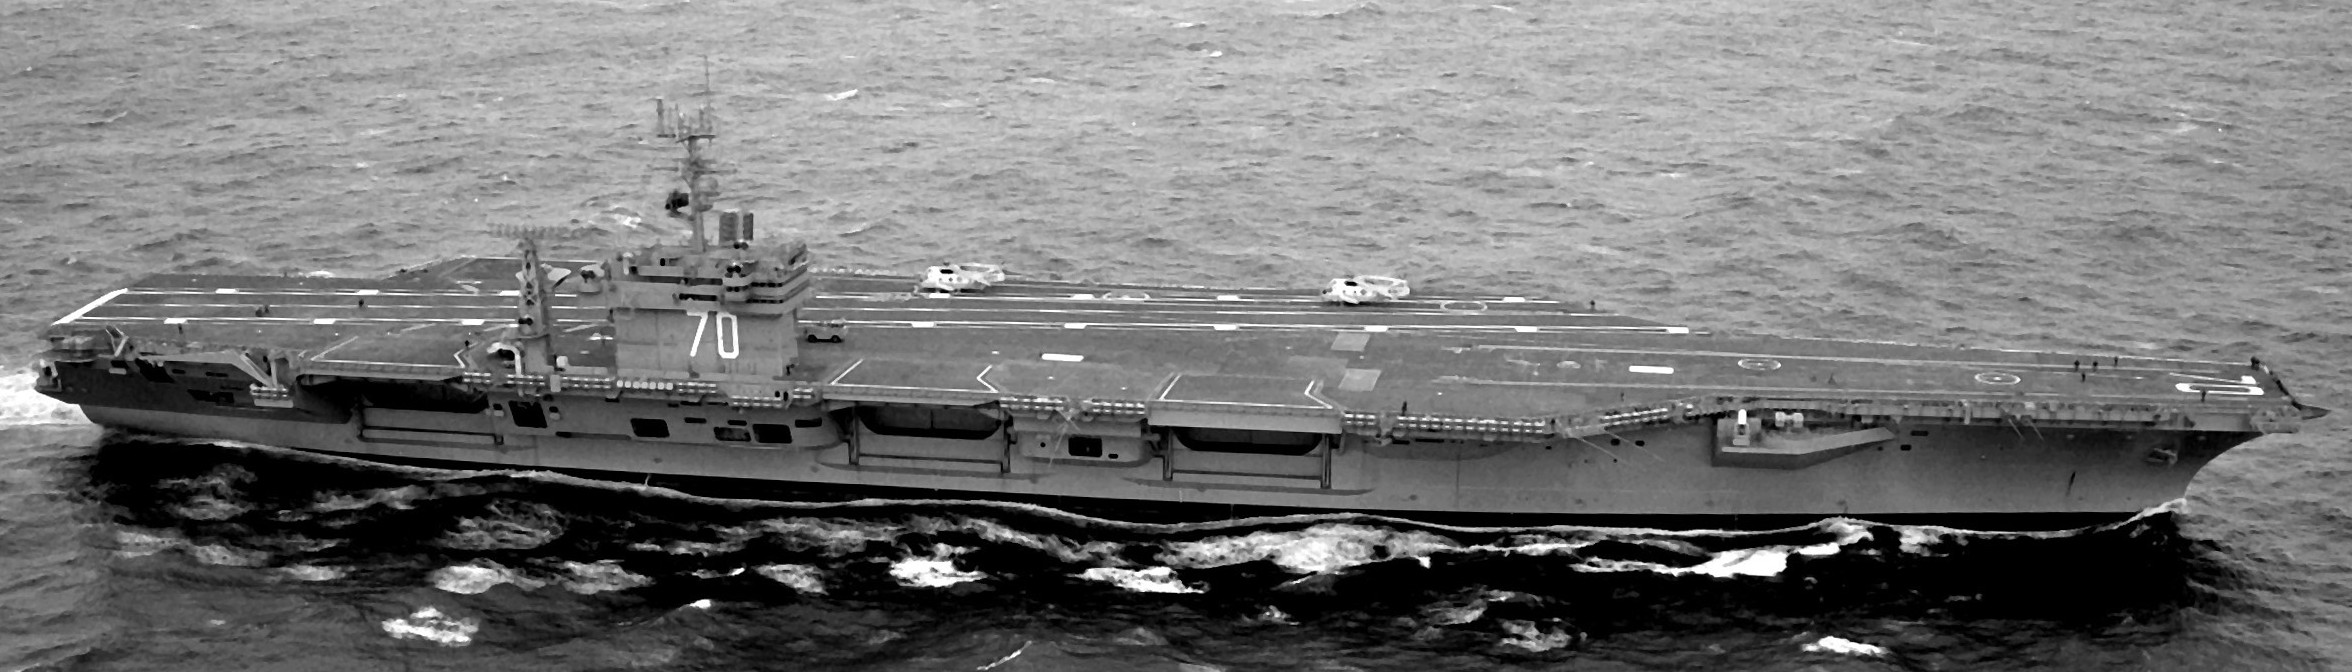 cvn-70 uss carl vinson nimitz class aircraft carrier us navy 11